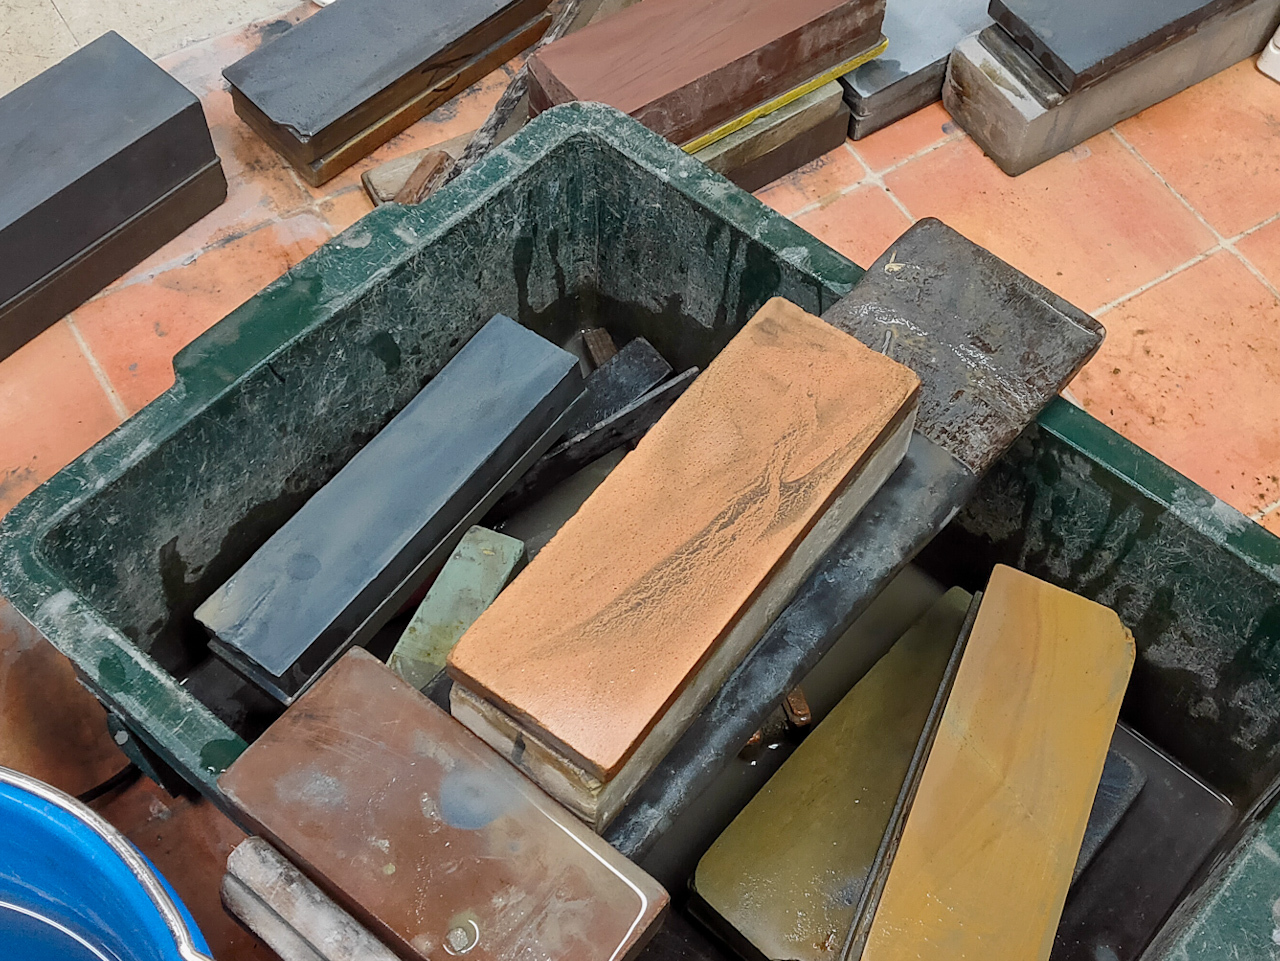 作業に使用する砥石はすべて篠沢さんの自前。刃物に合わせて10種類以上の砥石を使い分けられます。